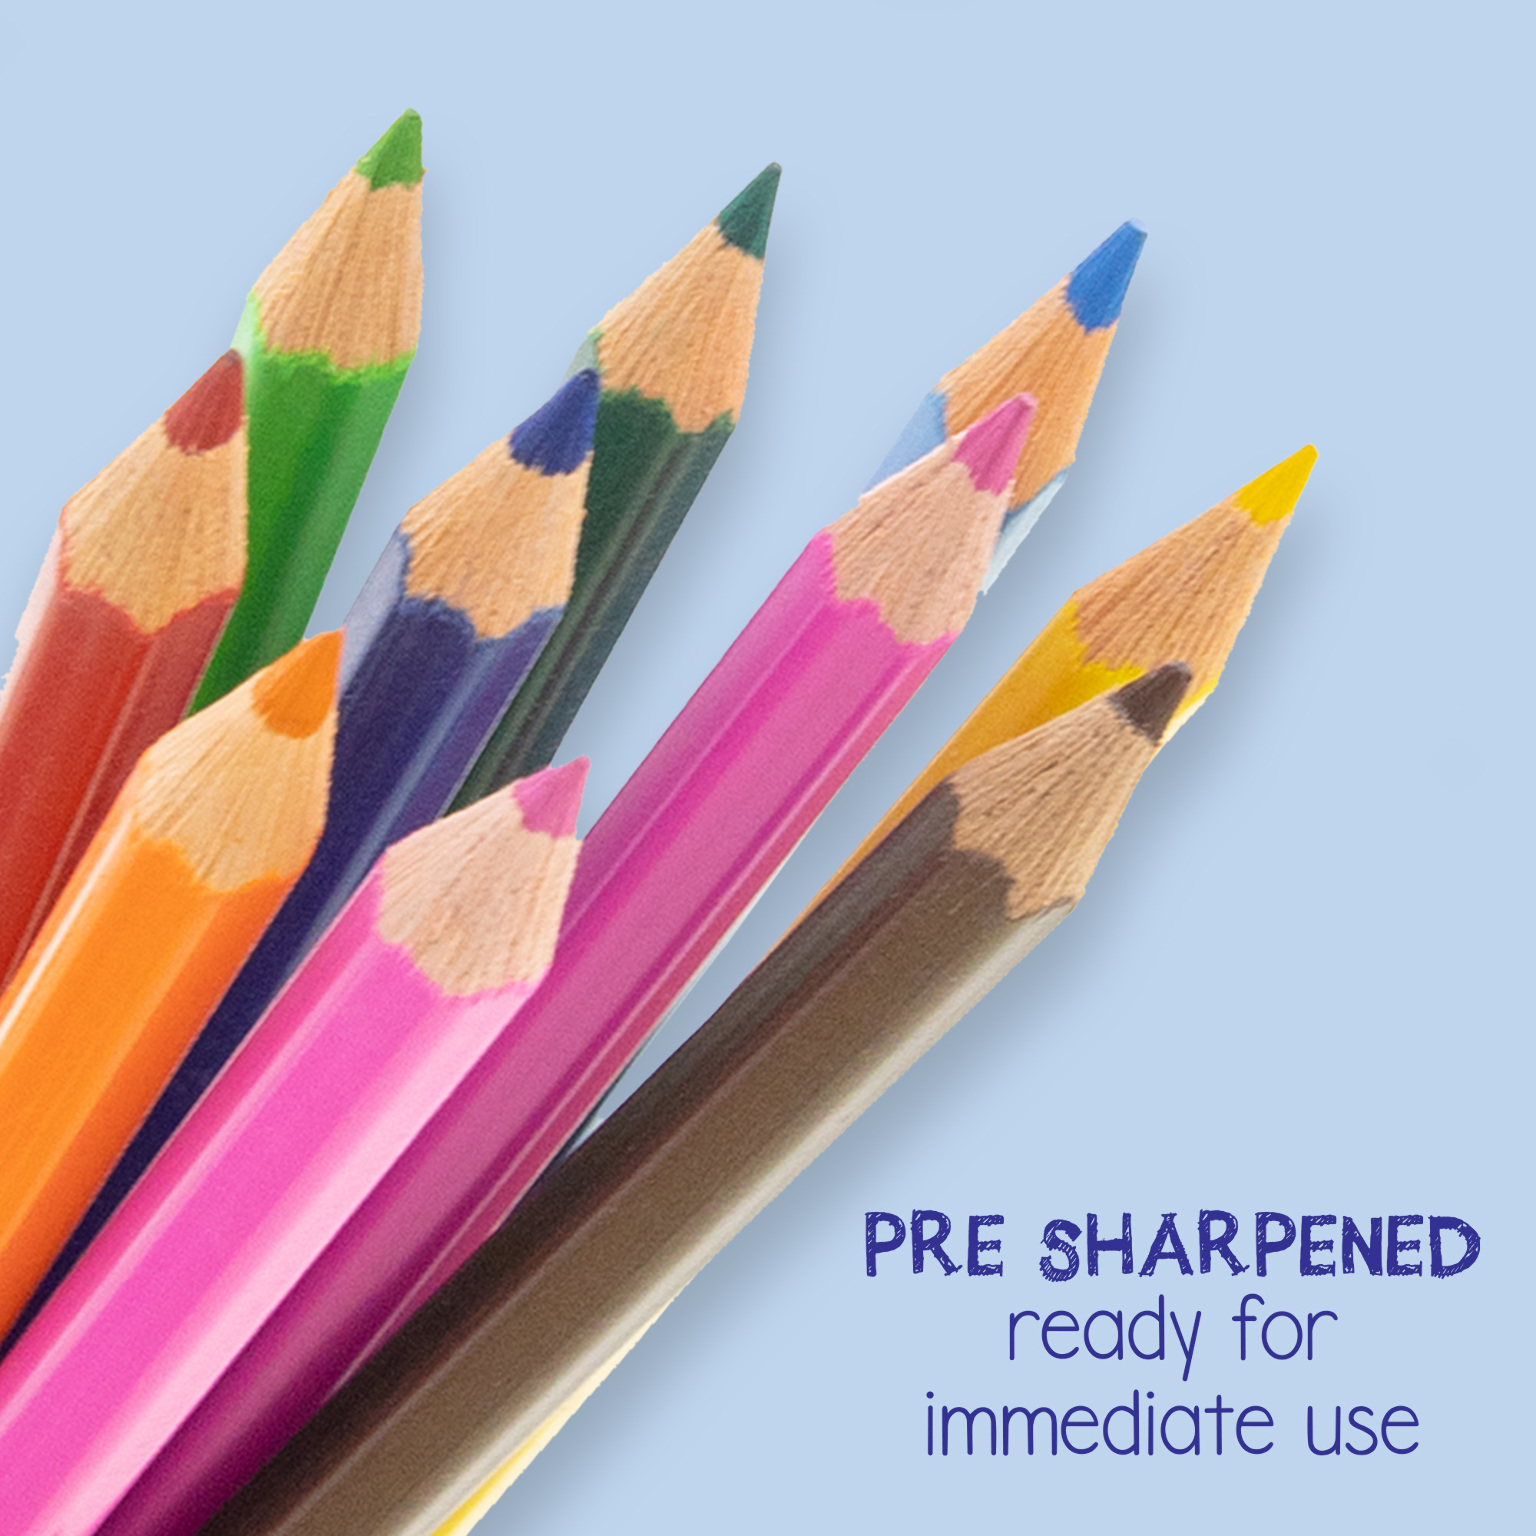 Crayola 18 ct. Twistables Colored Pencils – 365 Wholesale